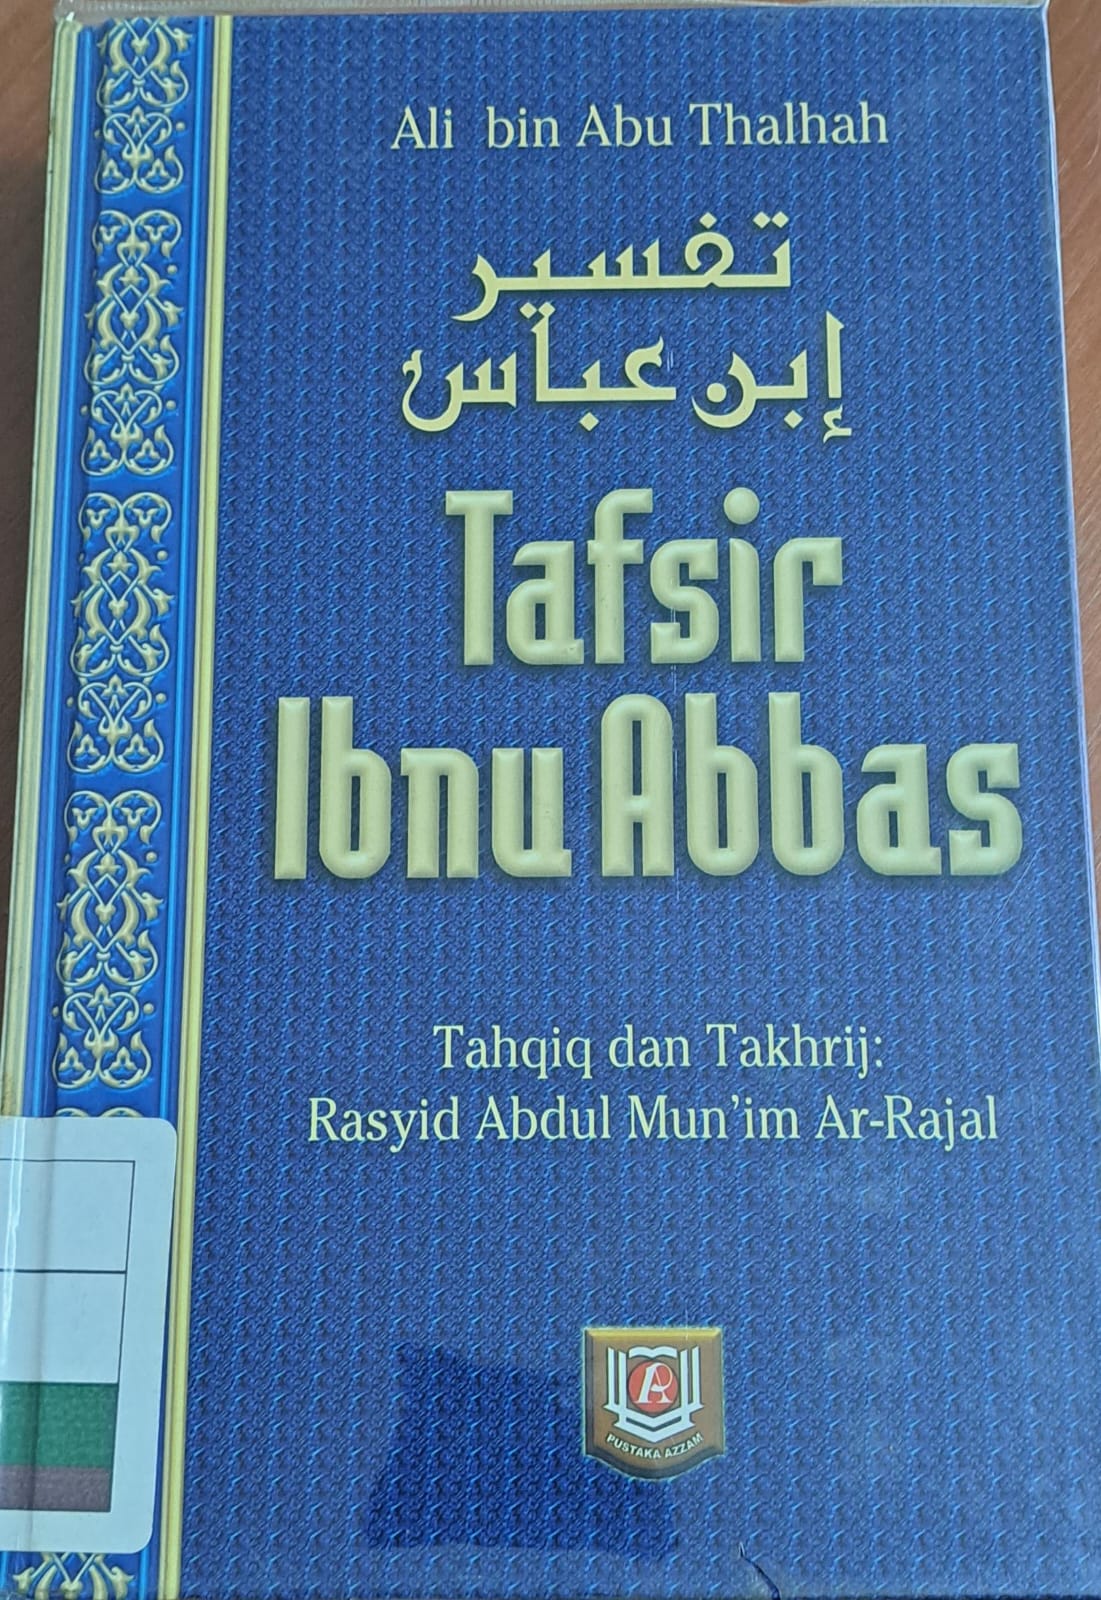 Tafsir ibnu abbas